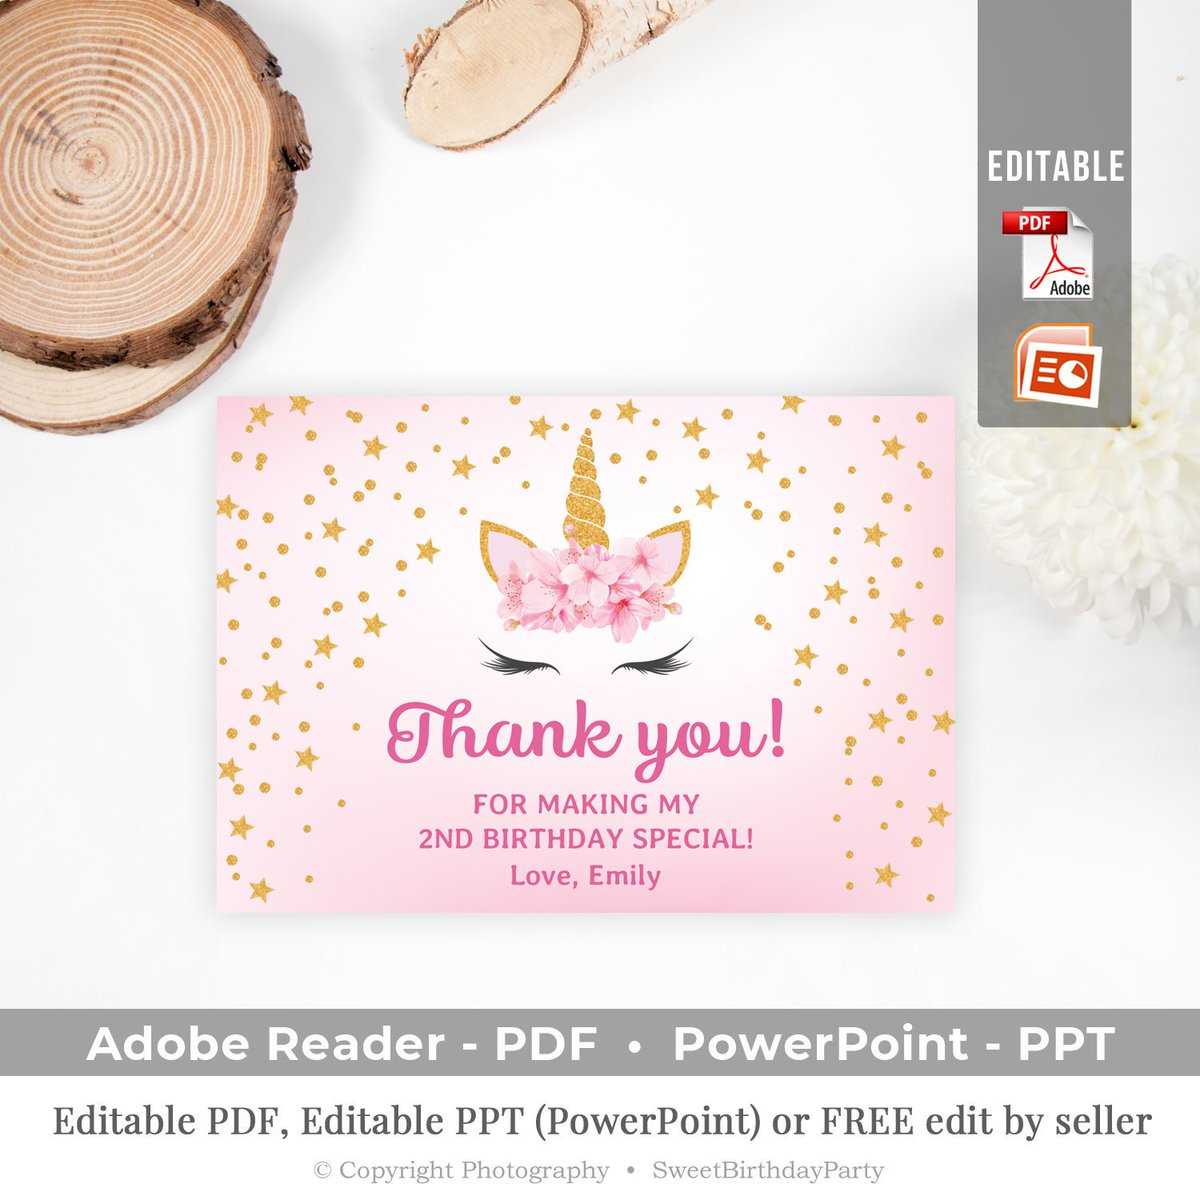 برچسب #unicornthankyou در توییتر Pertaining To Powerpoint Thank You Card Template